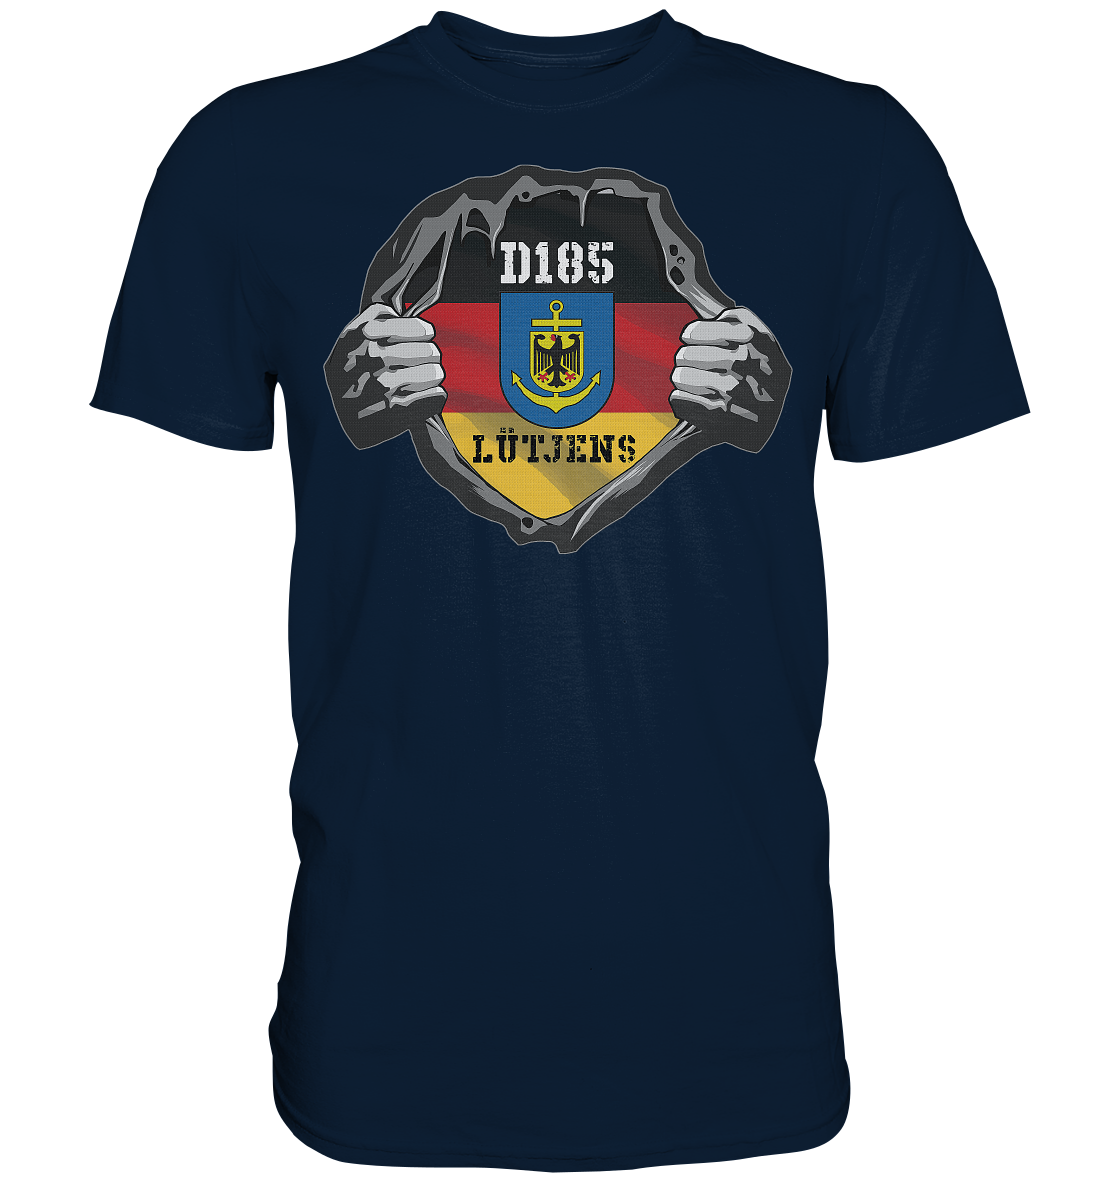 Aufriss D185 LÜTJENS - Premium Shirt